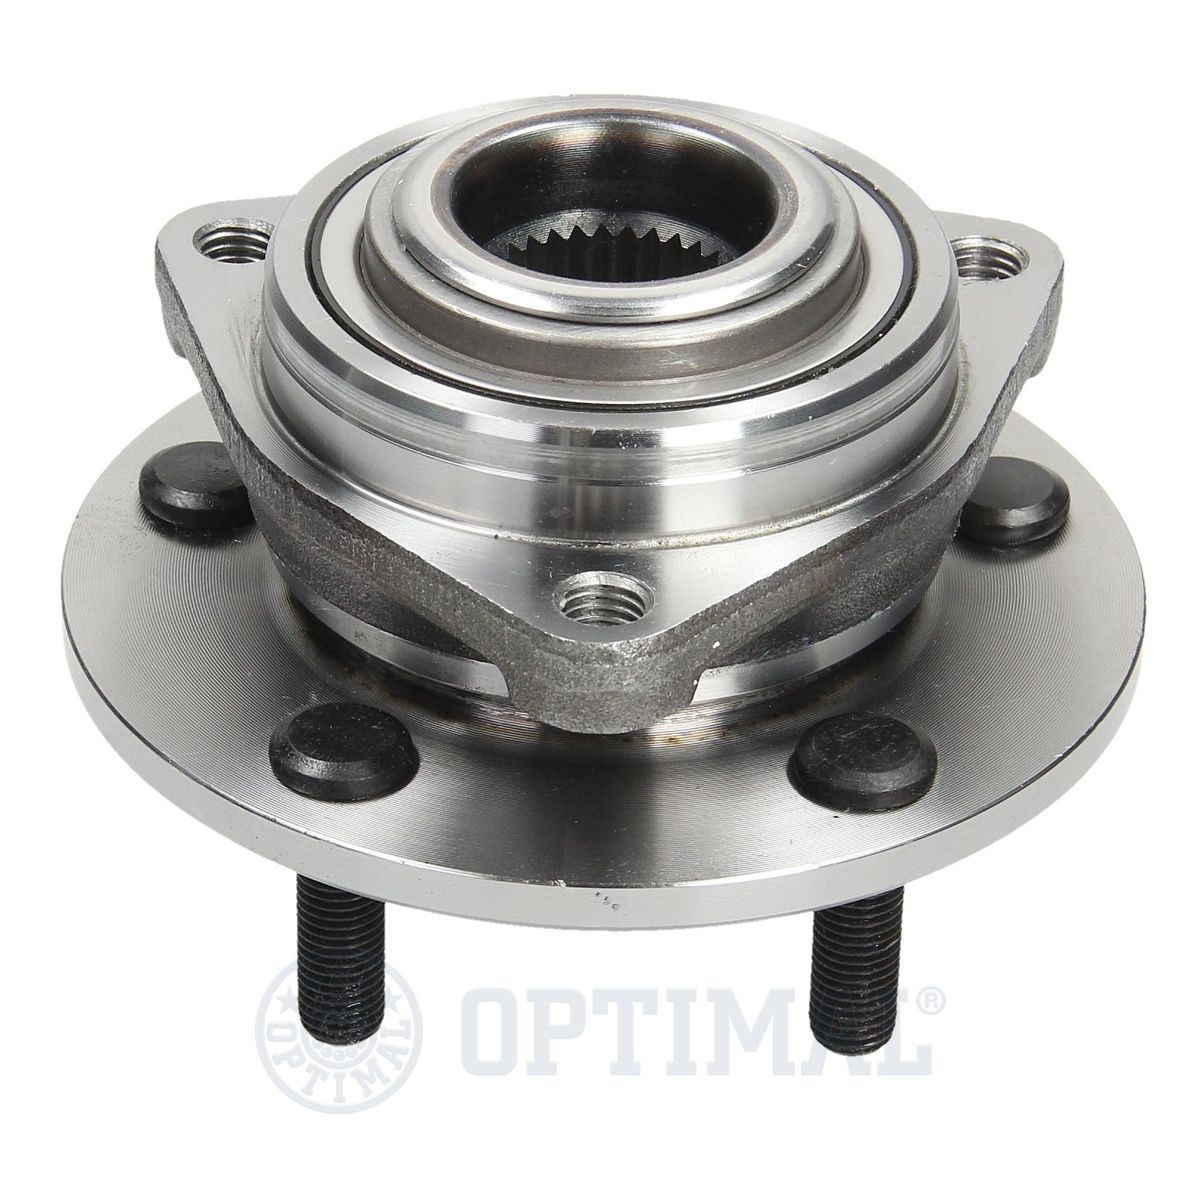 OPTIMAL 991593 Wheel bearing kit CHRYSLER experience and price